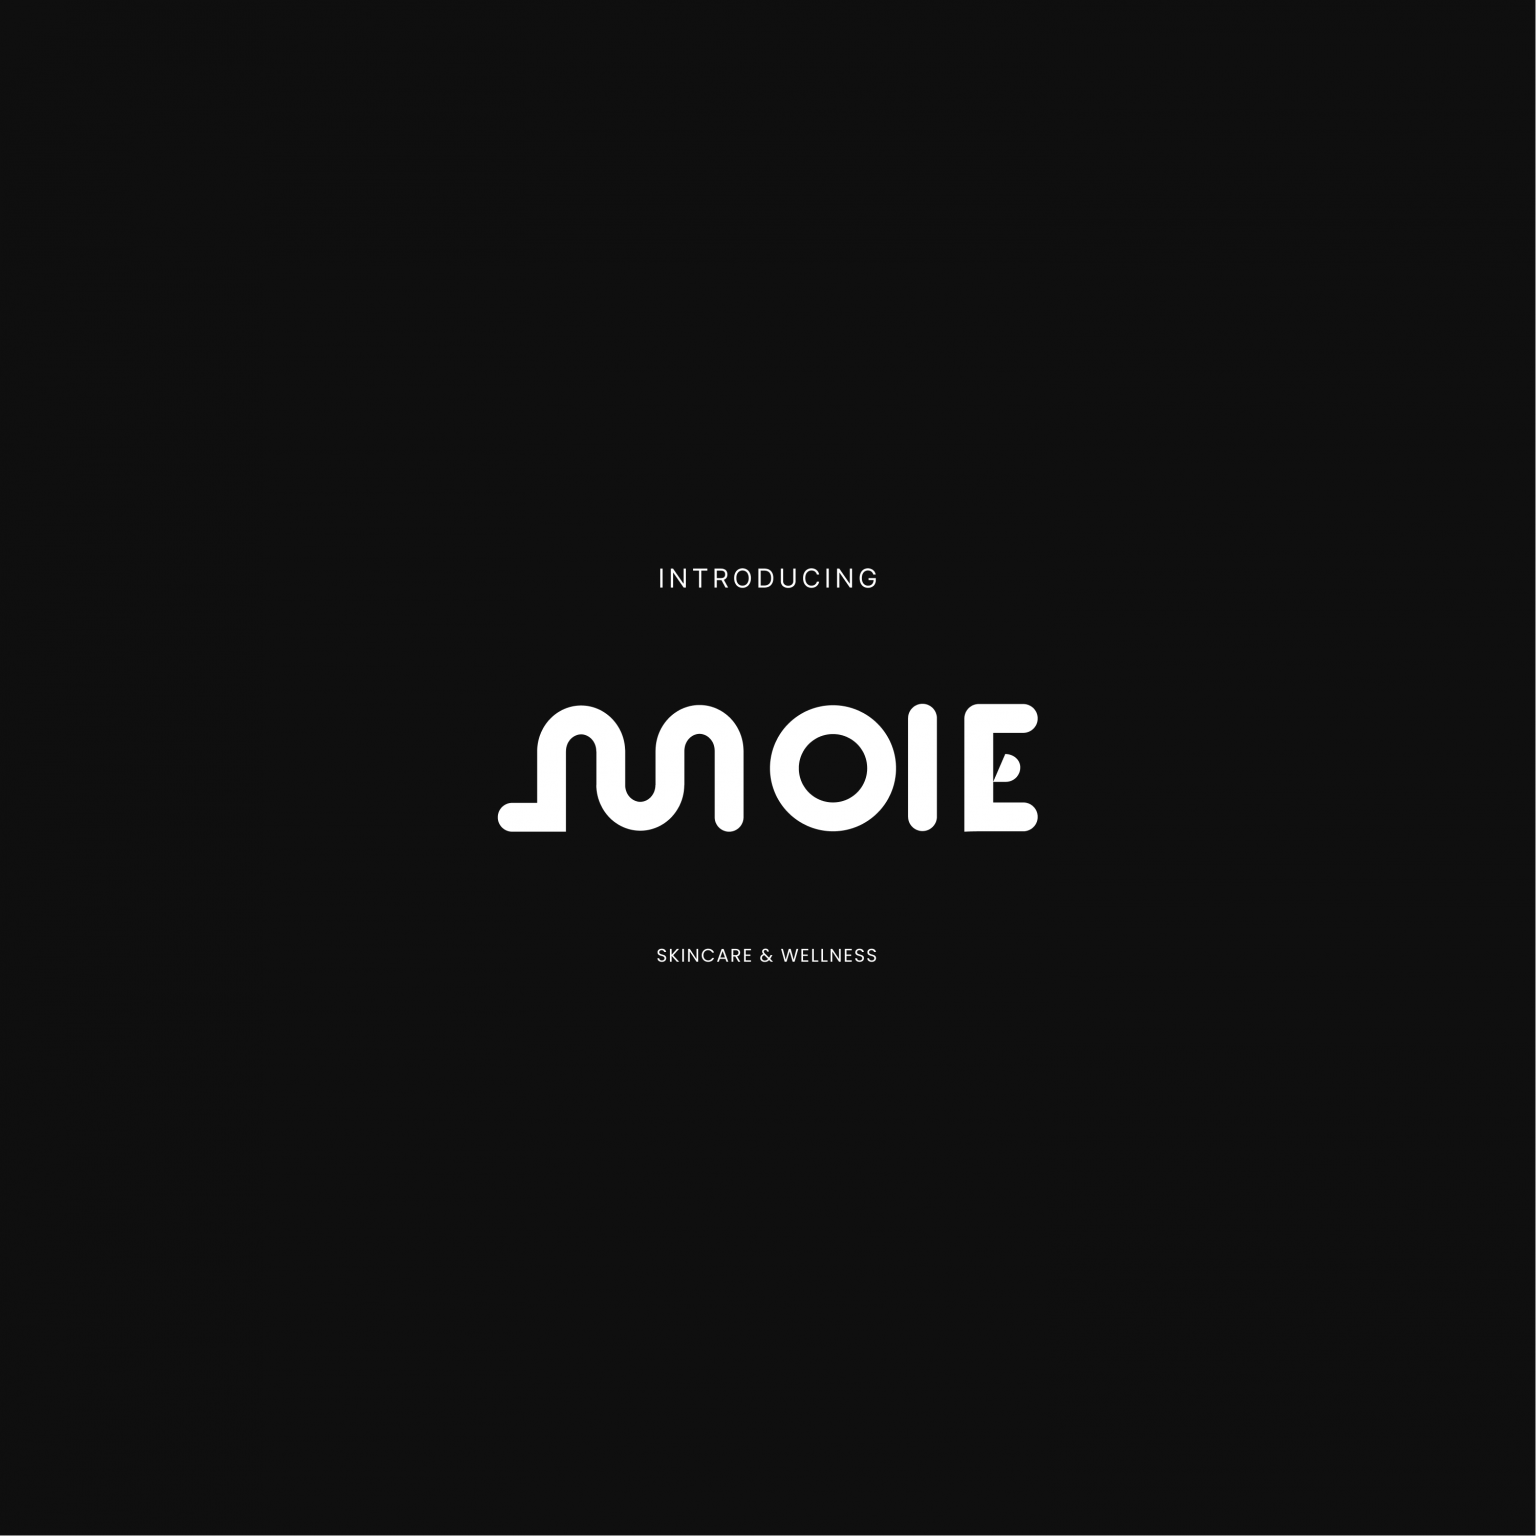 Visual design bournemouth - Moie 7